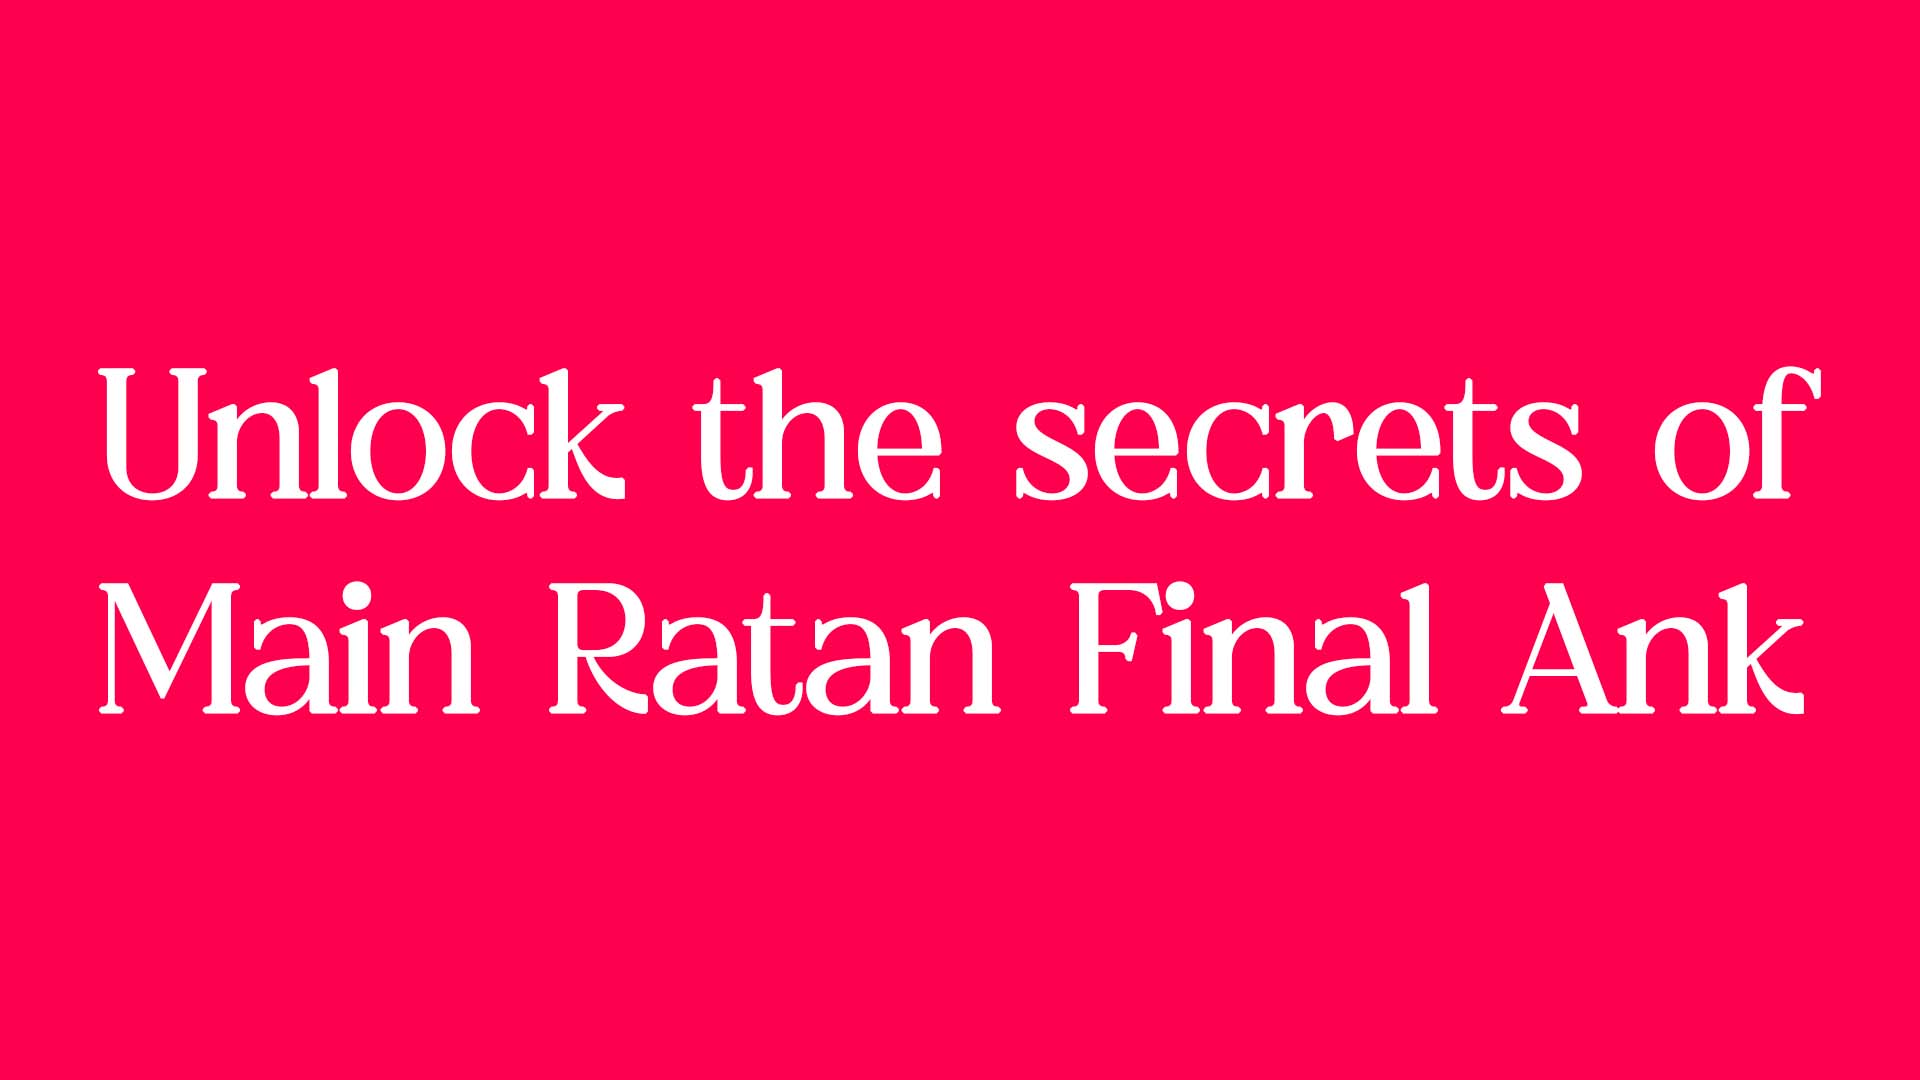 Unlock the secrets of Main Ratan Final Ank